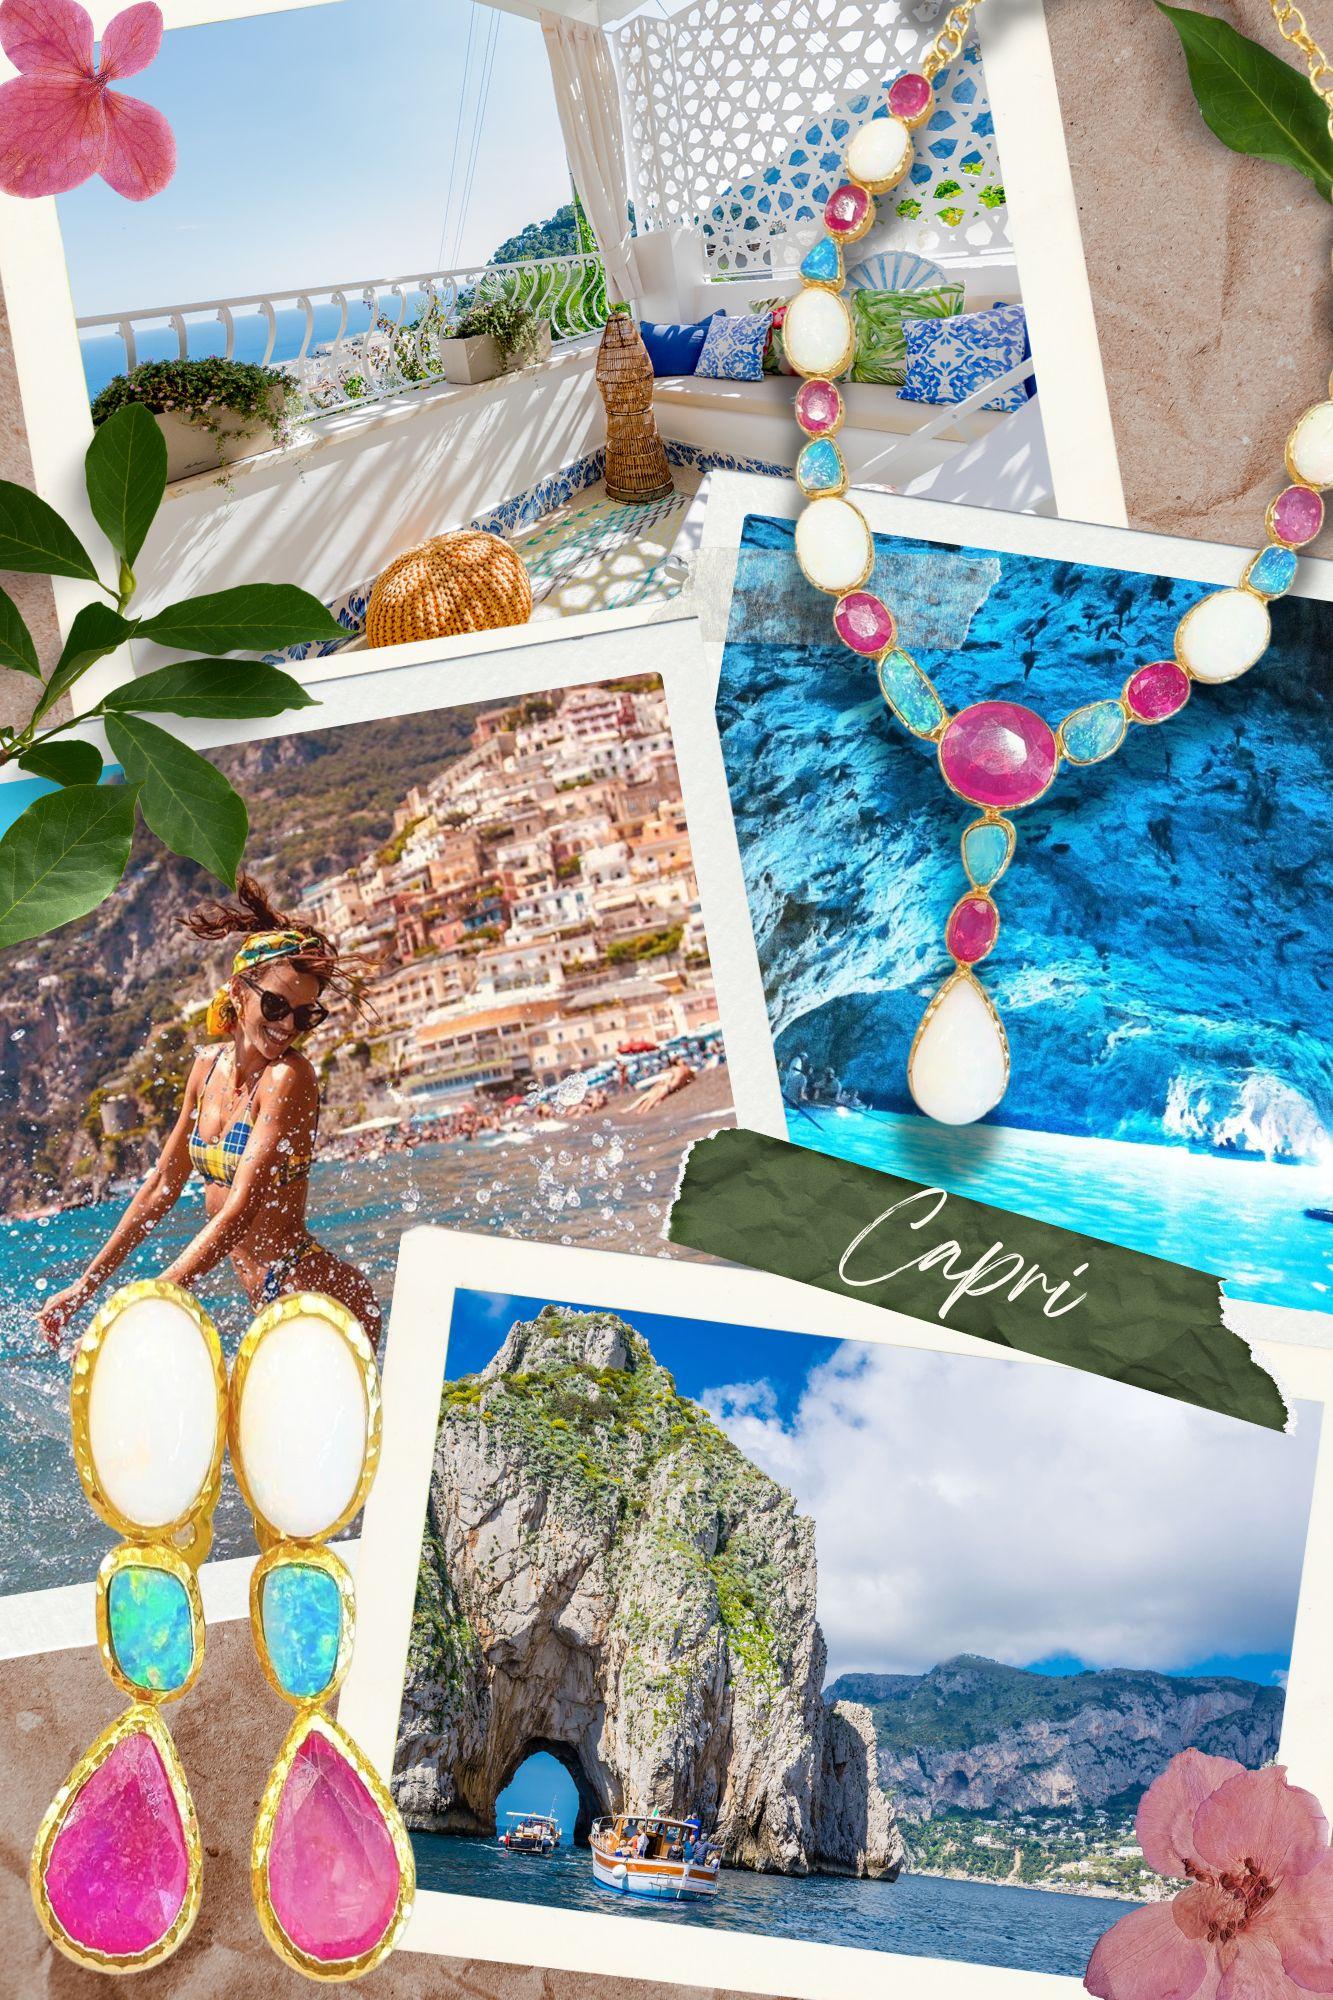 Bochic “Capri” Chandelier Ruby & Multi Gem Earrings Set In 18K Gold & Silver  For Sale 3